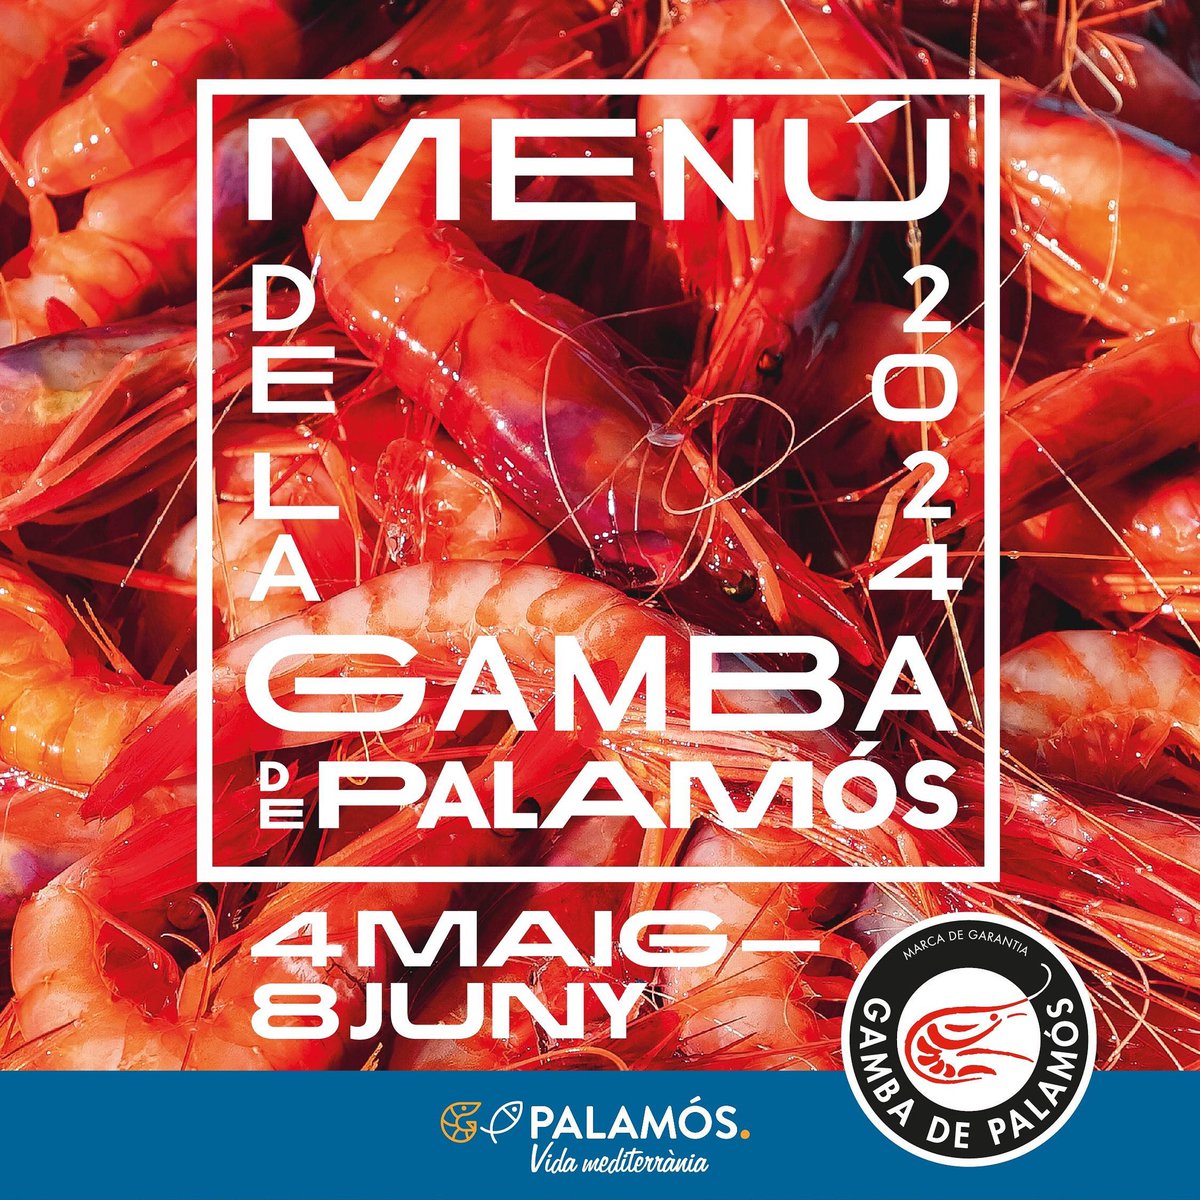 El Menú de la Gamba de #Palamós comença aquest dissabte 4 de maig! 🦐
Amb la col·laboració dels restaurants oficials certificats amb la prestigiosa Marca de Garantia d’aquest deliciós producte palamosí.

ℹ️ visitpalamos.cat

@visitpalamos @costabrava @somgastronomia